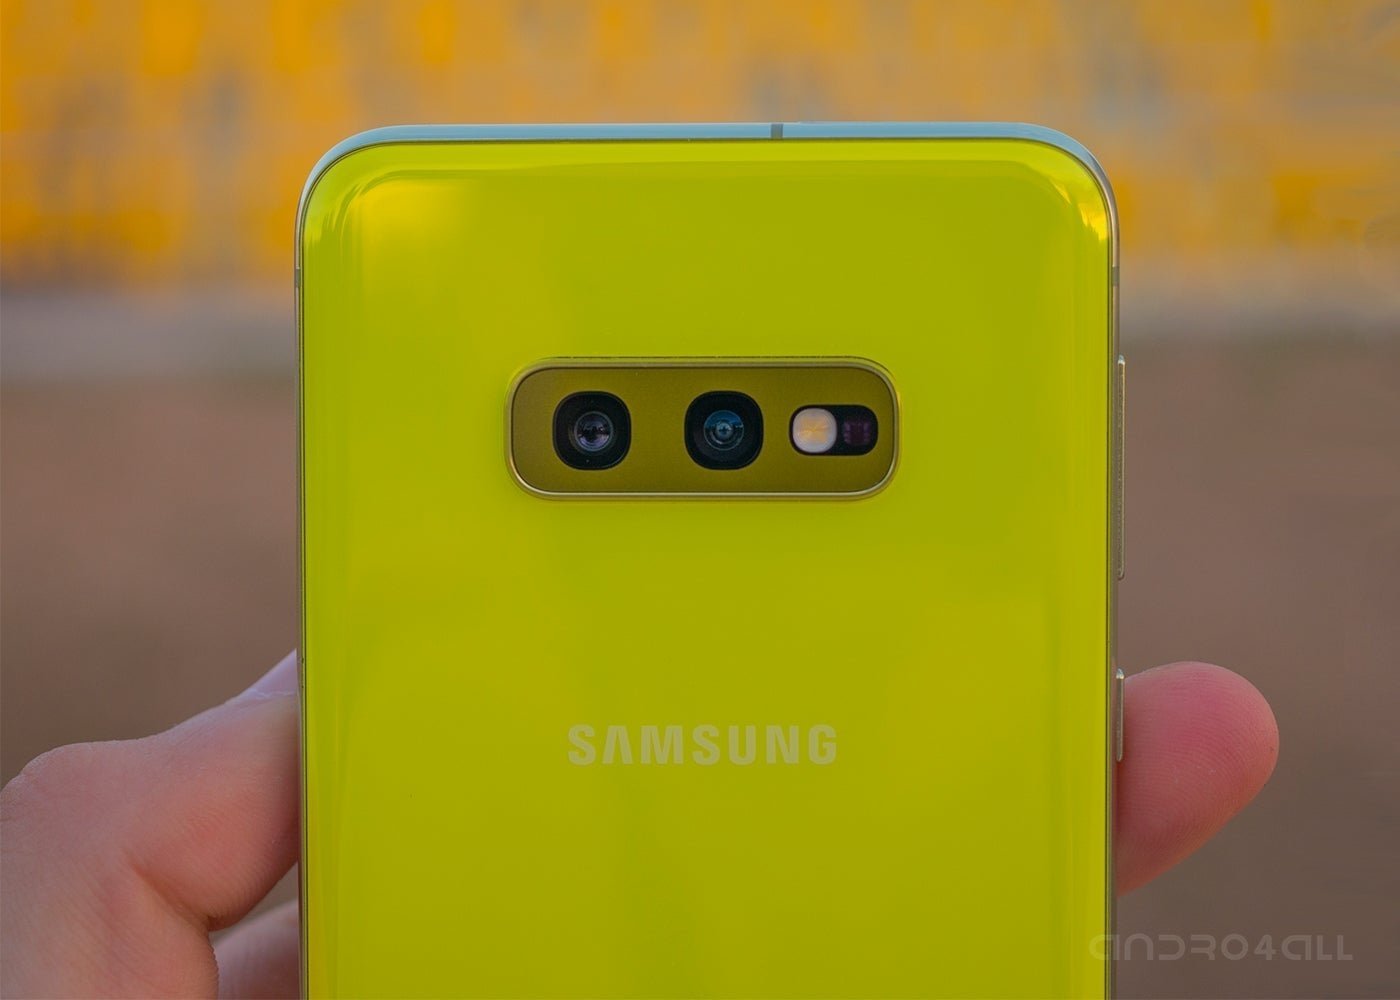 Samsung Galaxy S10e, sensores